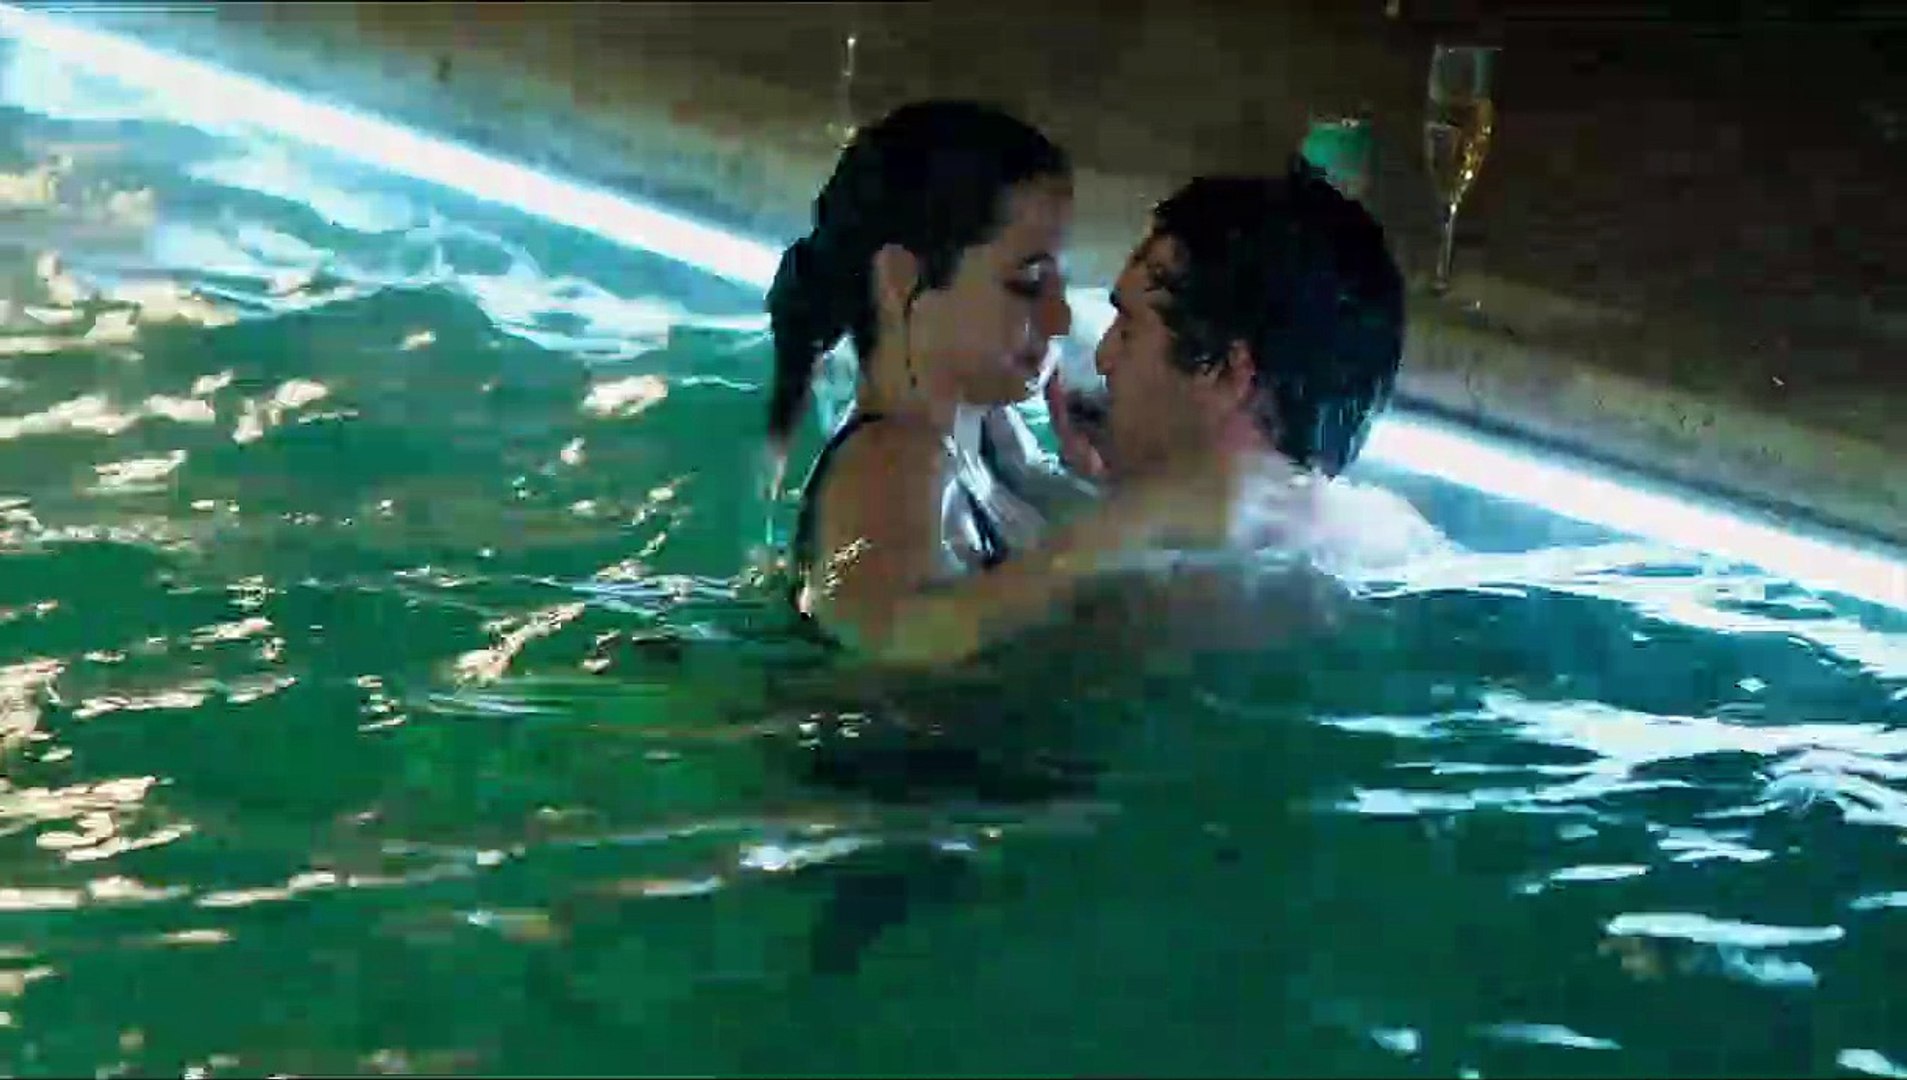 Ana de Armas gropes Ben Affleck in 'Deep Water' trailer